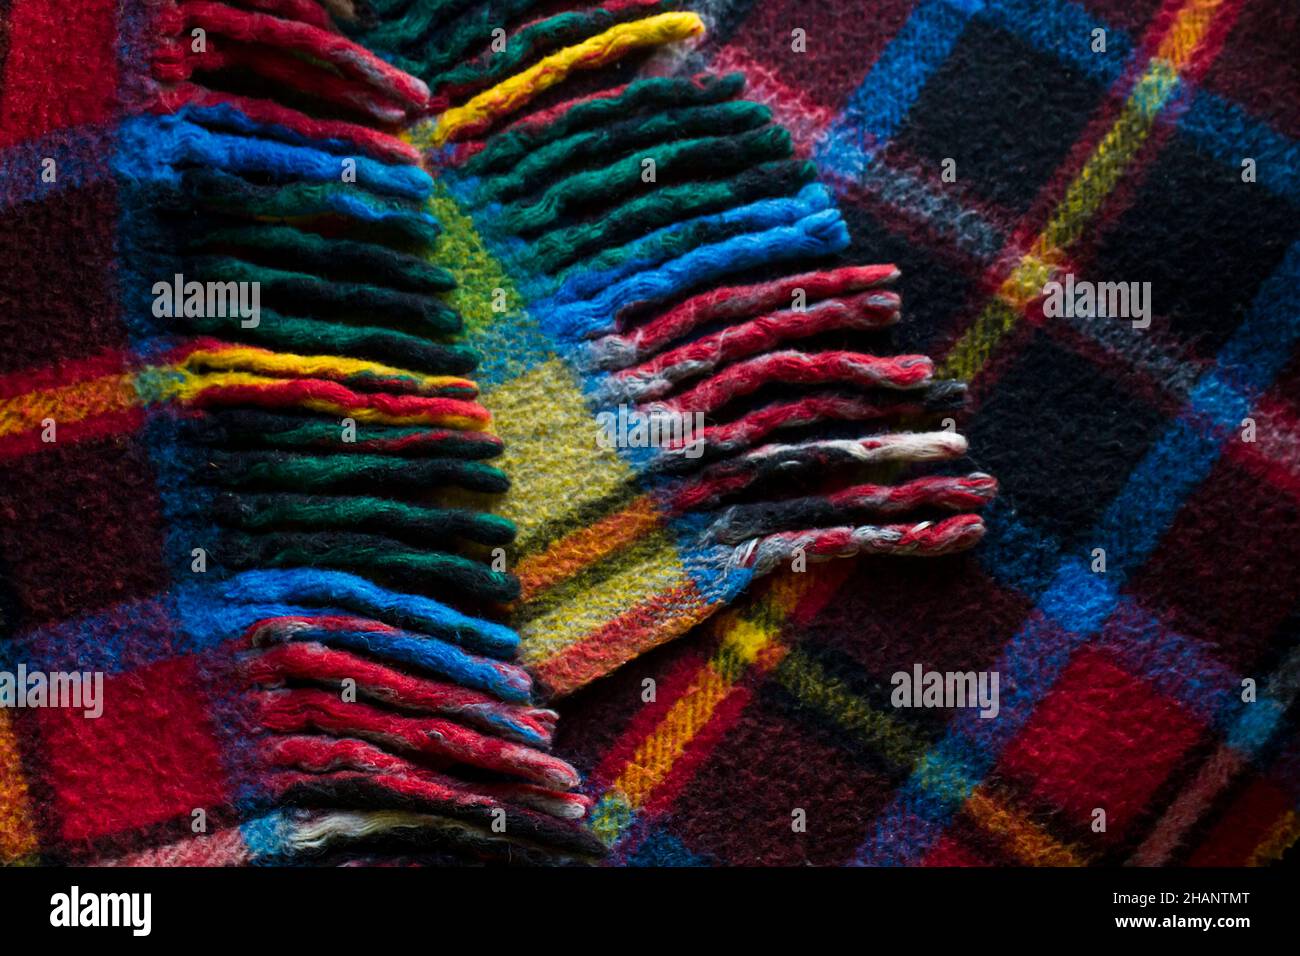 100% reine Wolle, karierten Scotch Decke Hintergrund, Draufsicht  Stockfotografie - Alamy